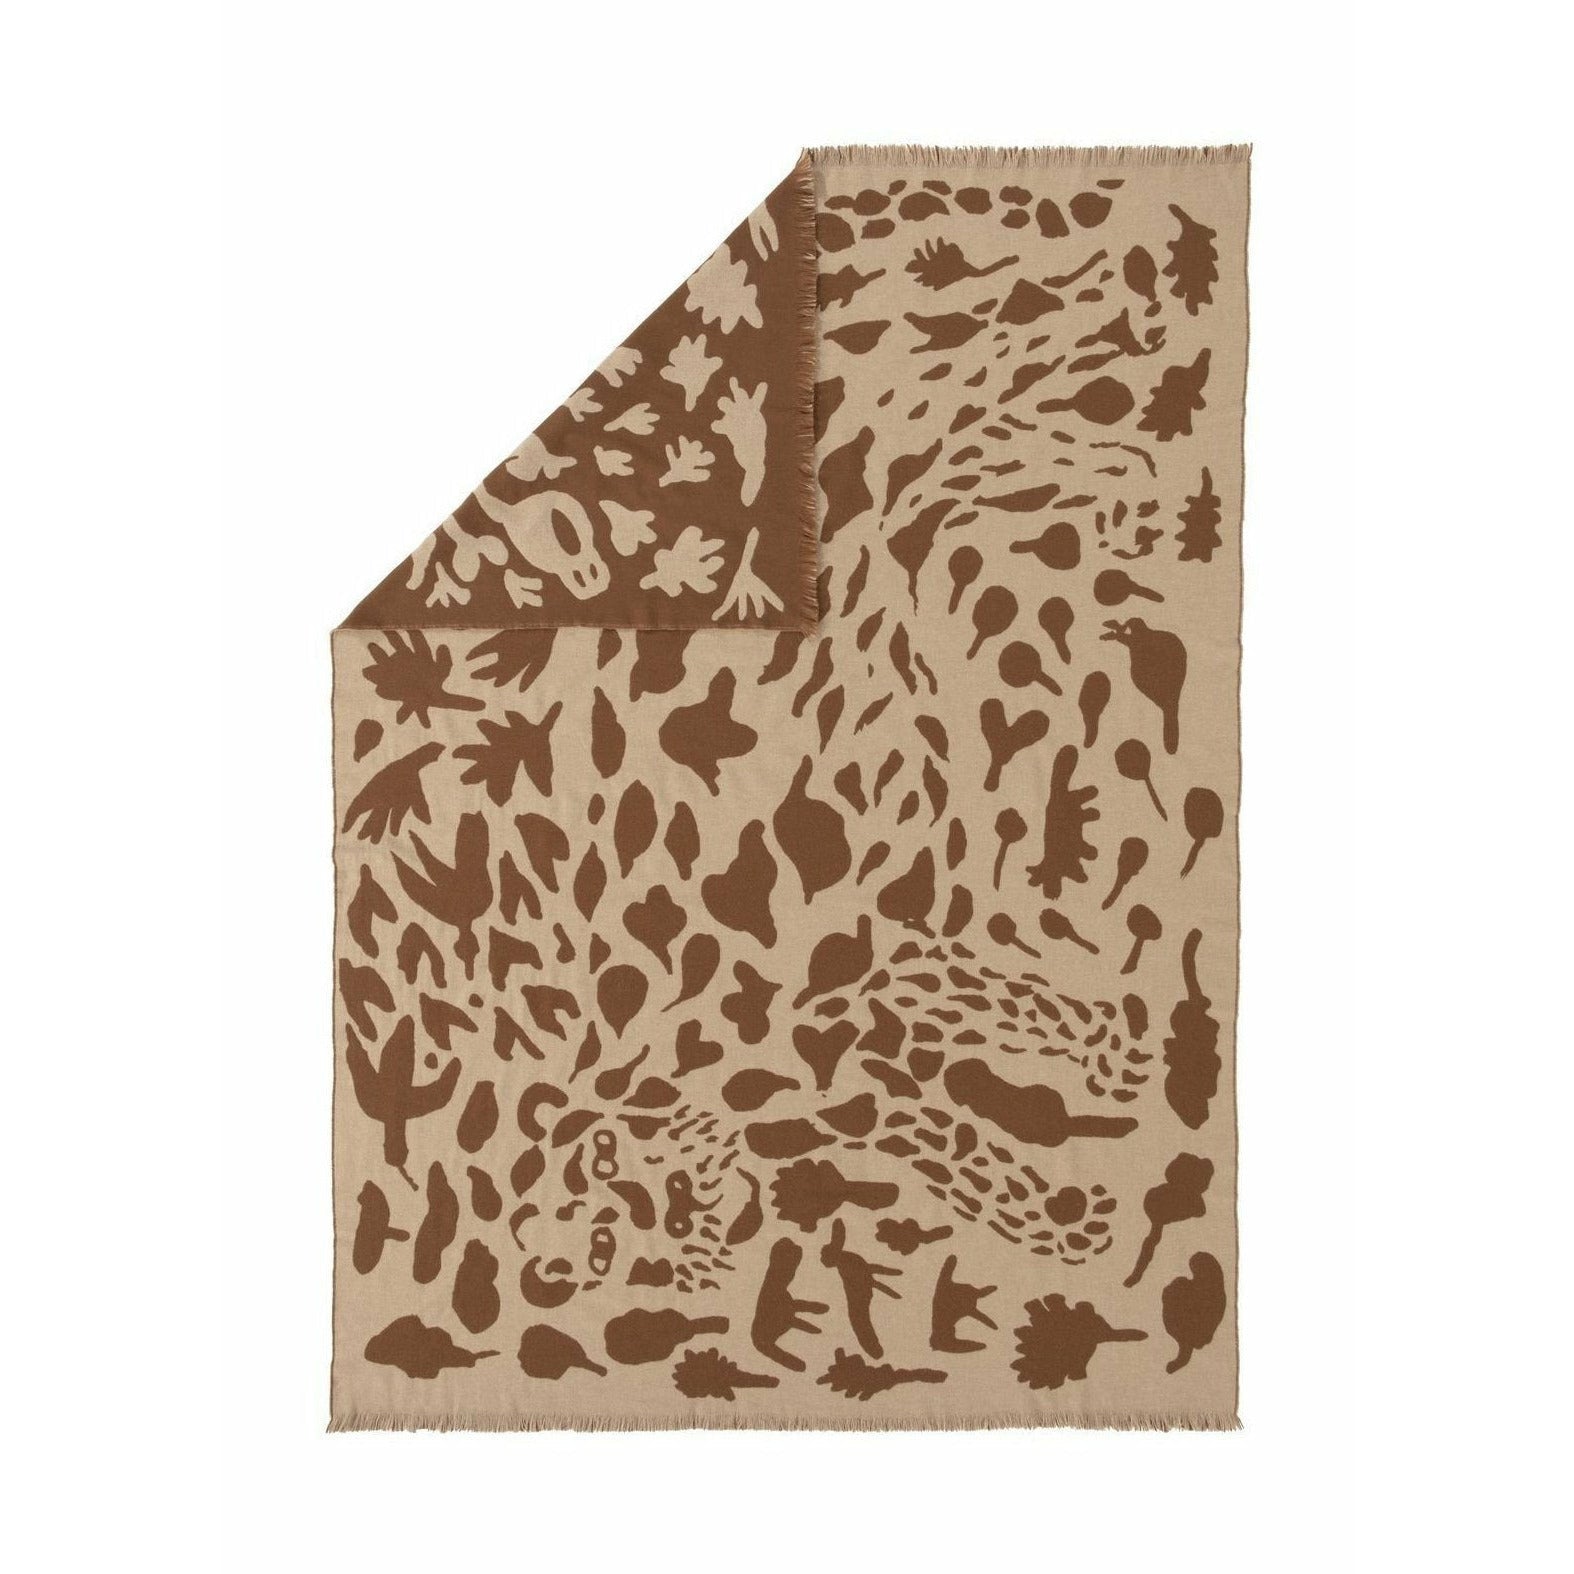 Iittala oiva toikka teppe cheetah brun, 180x130cm